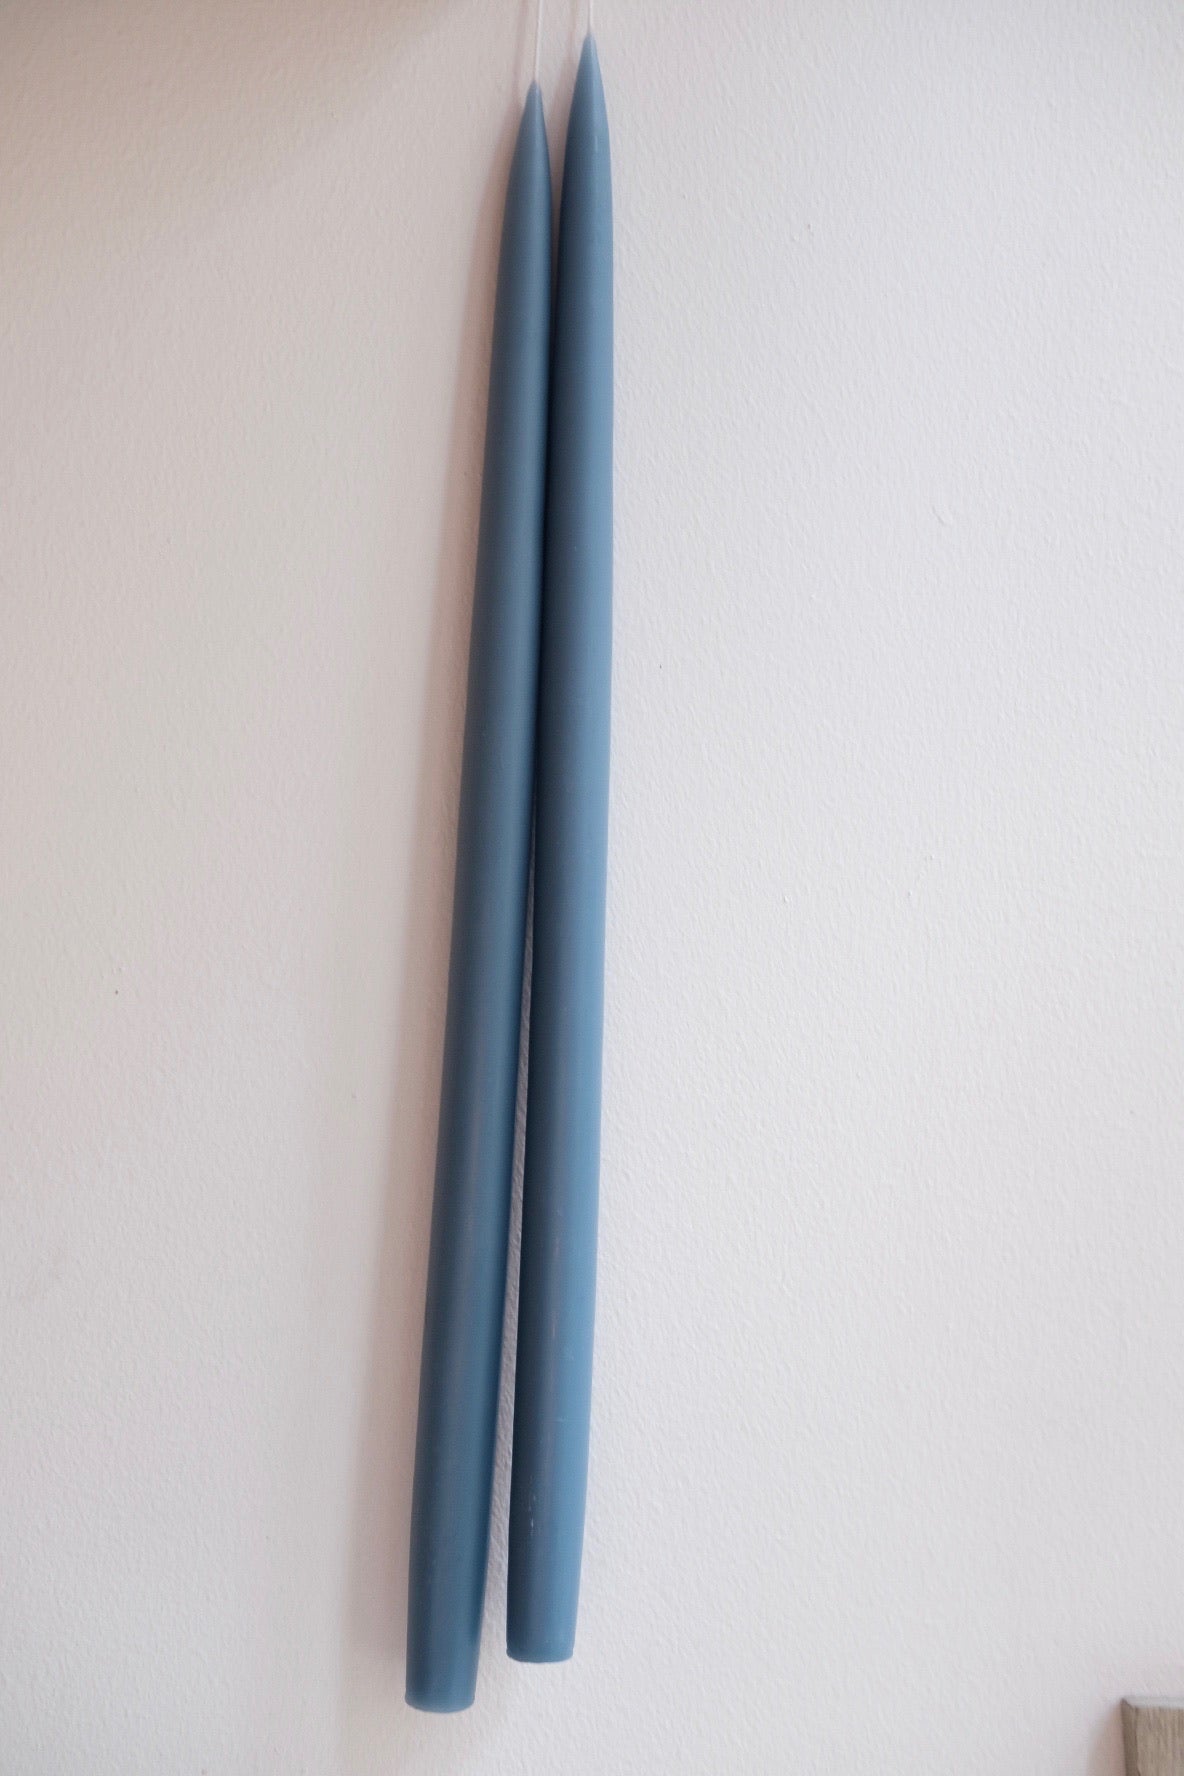 Hånddyppede lys • 45 cm • Gråblå